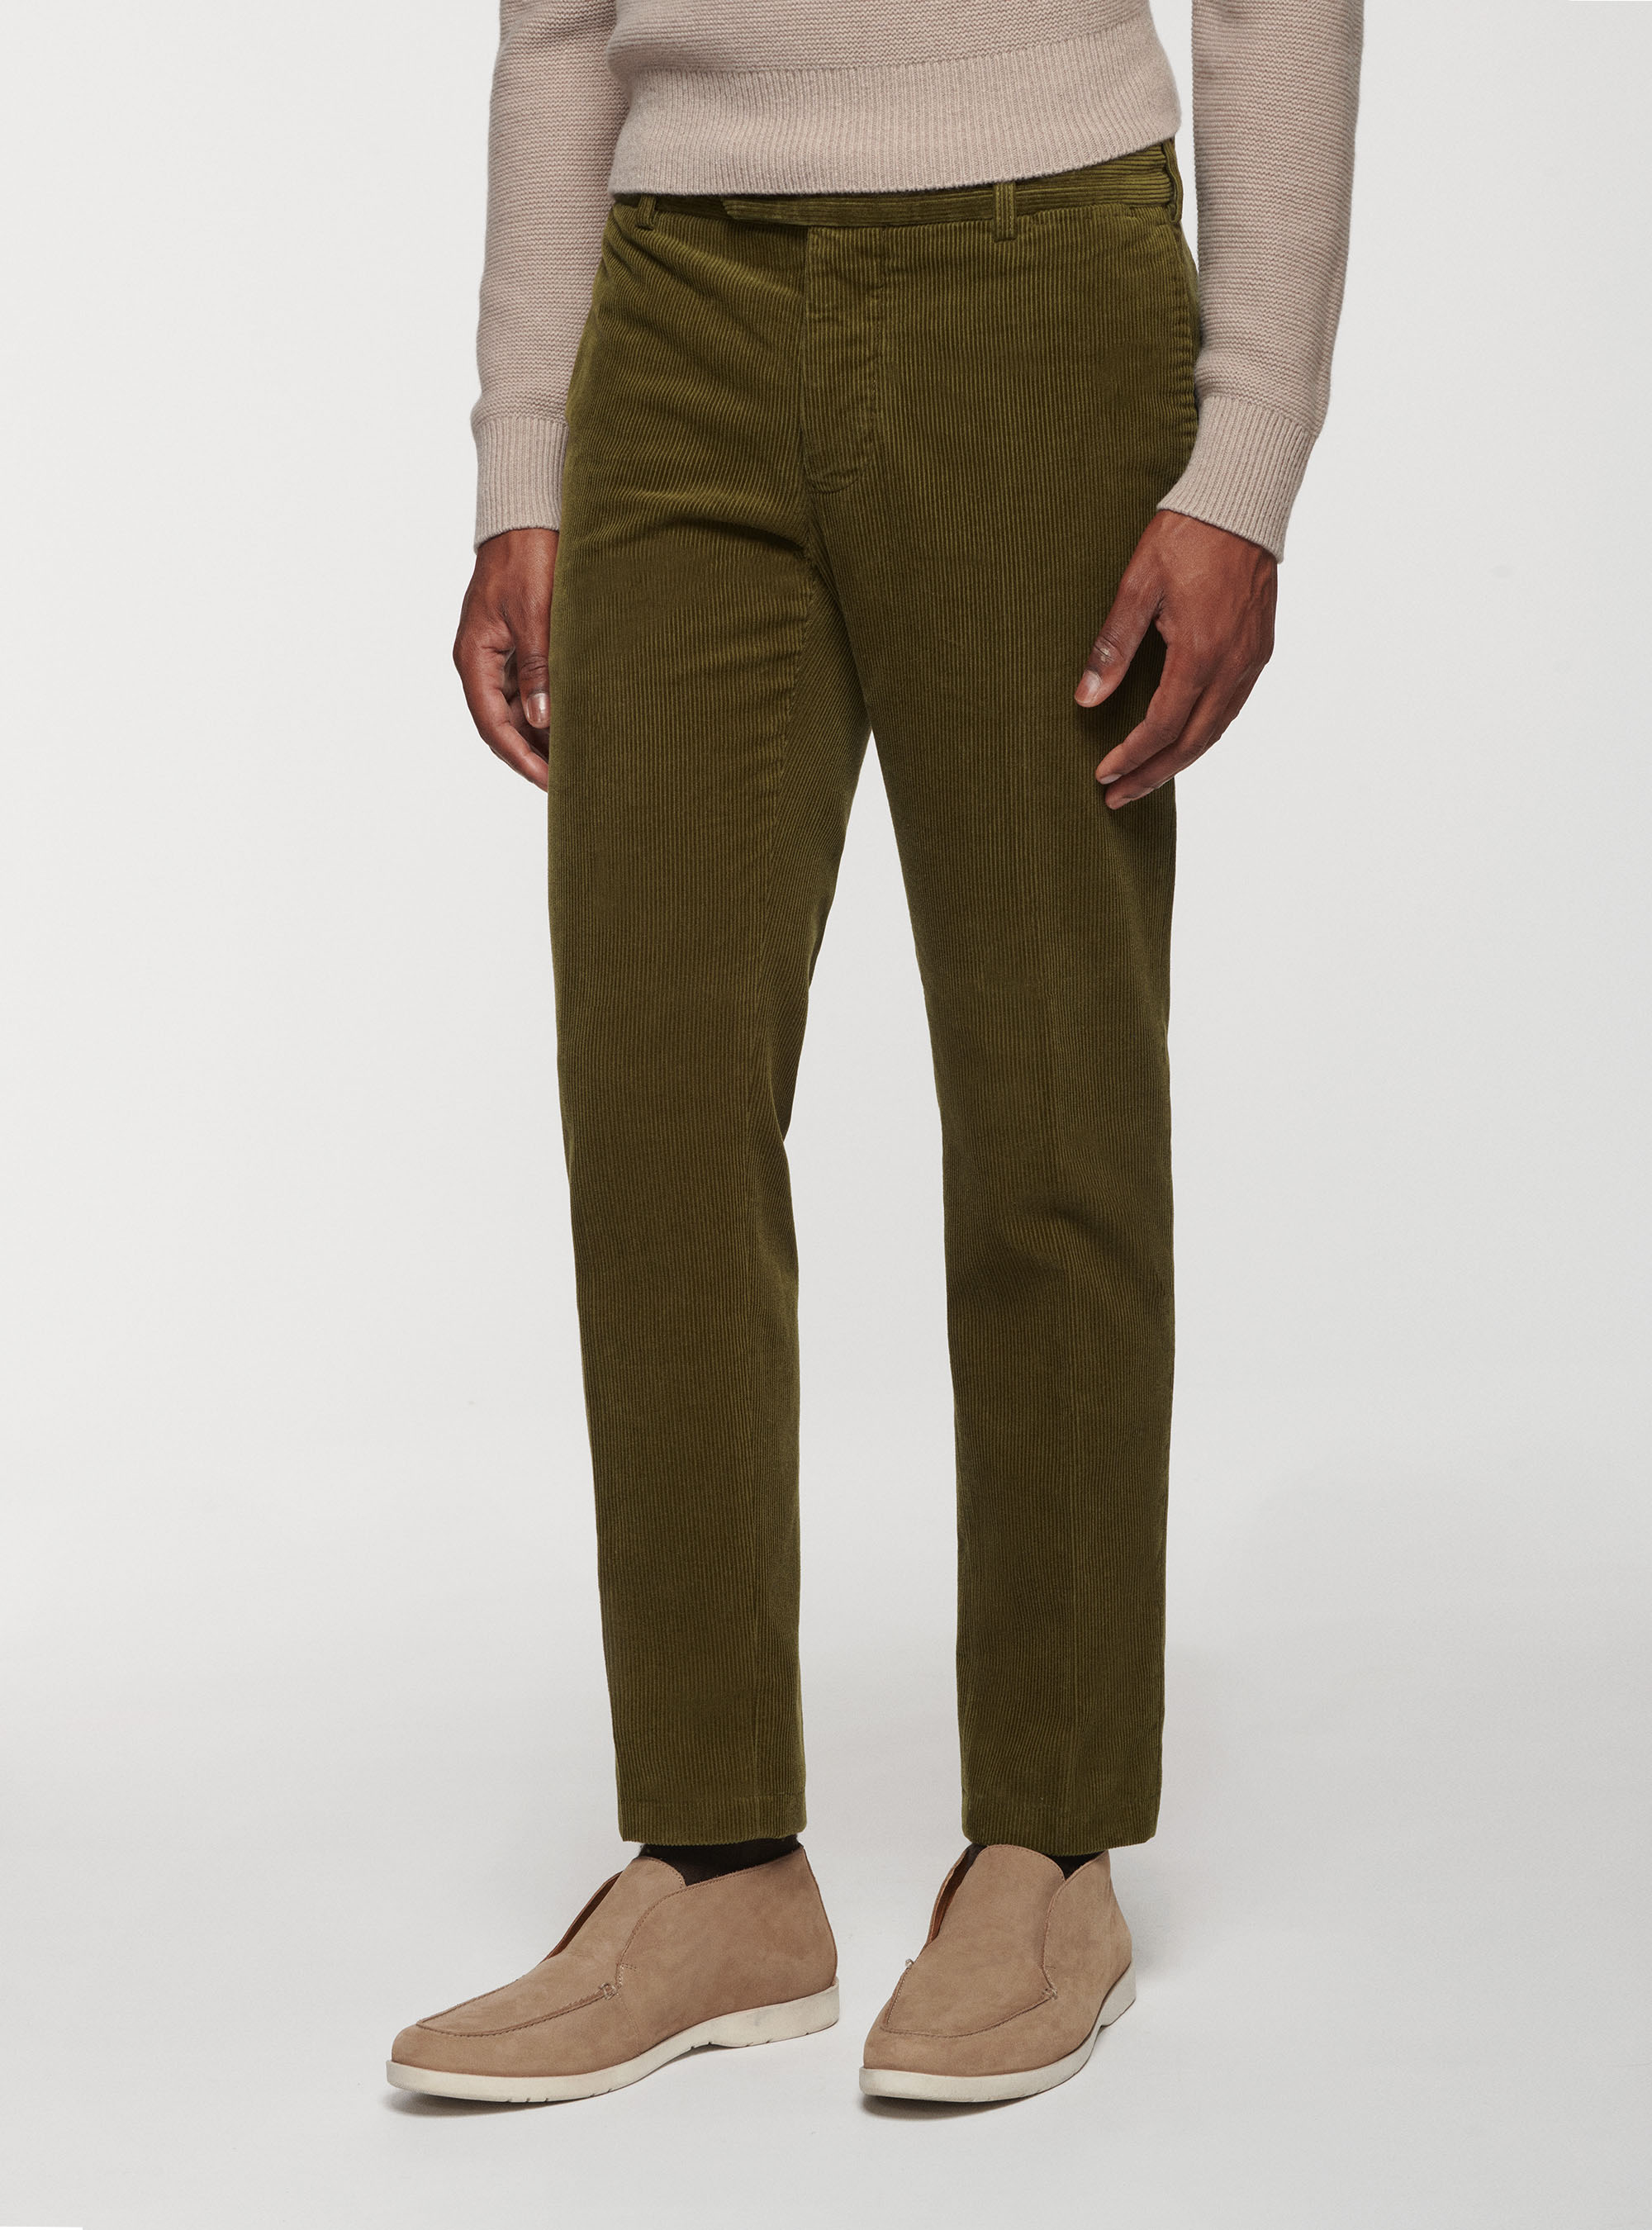 Trousers by Gutteridge since 1878